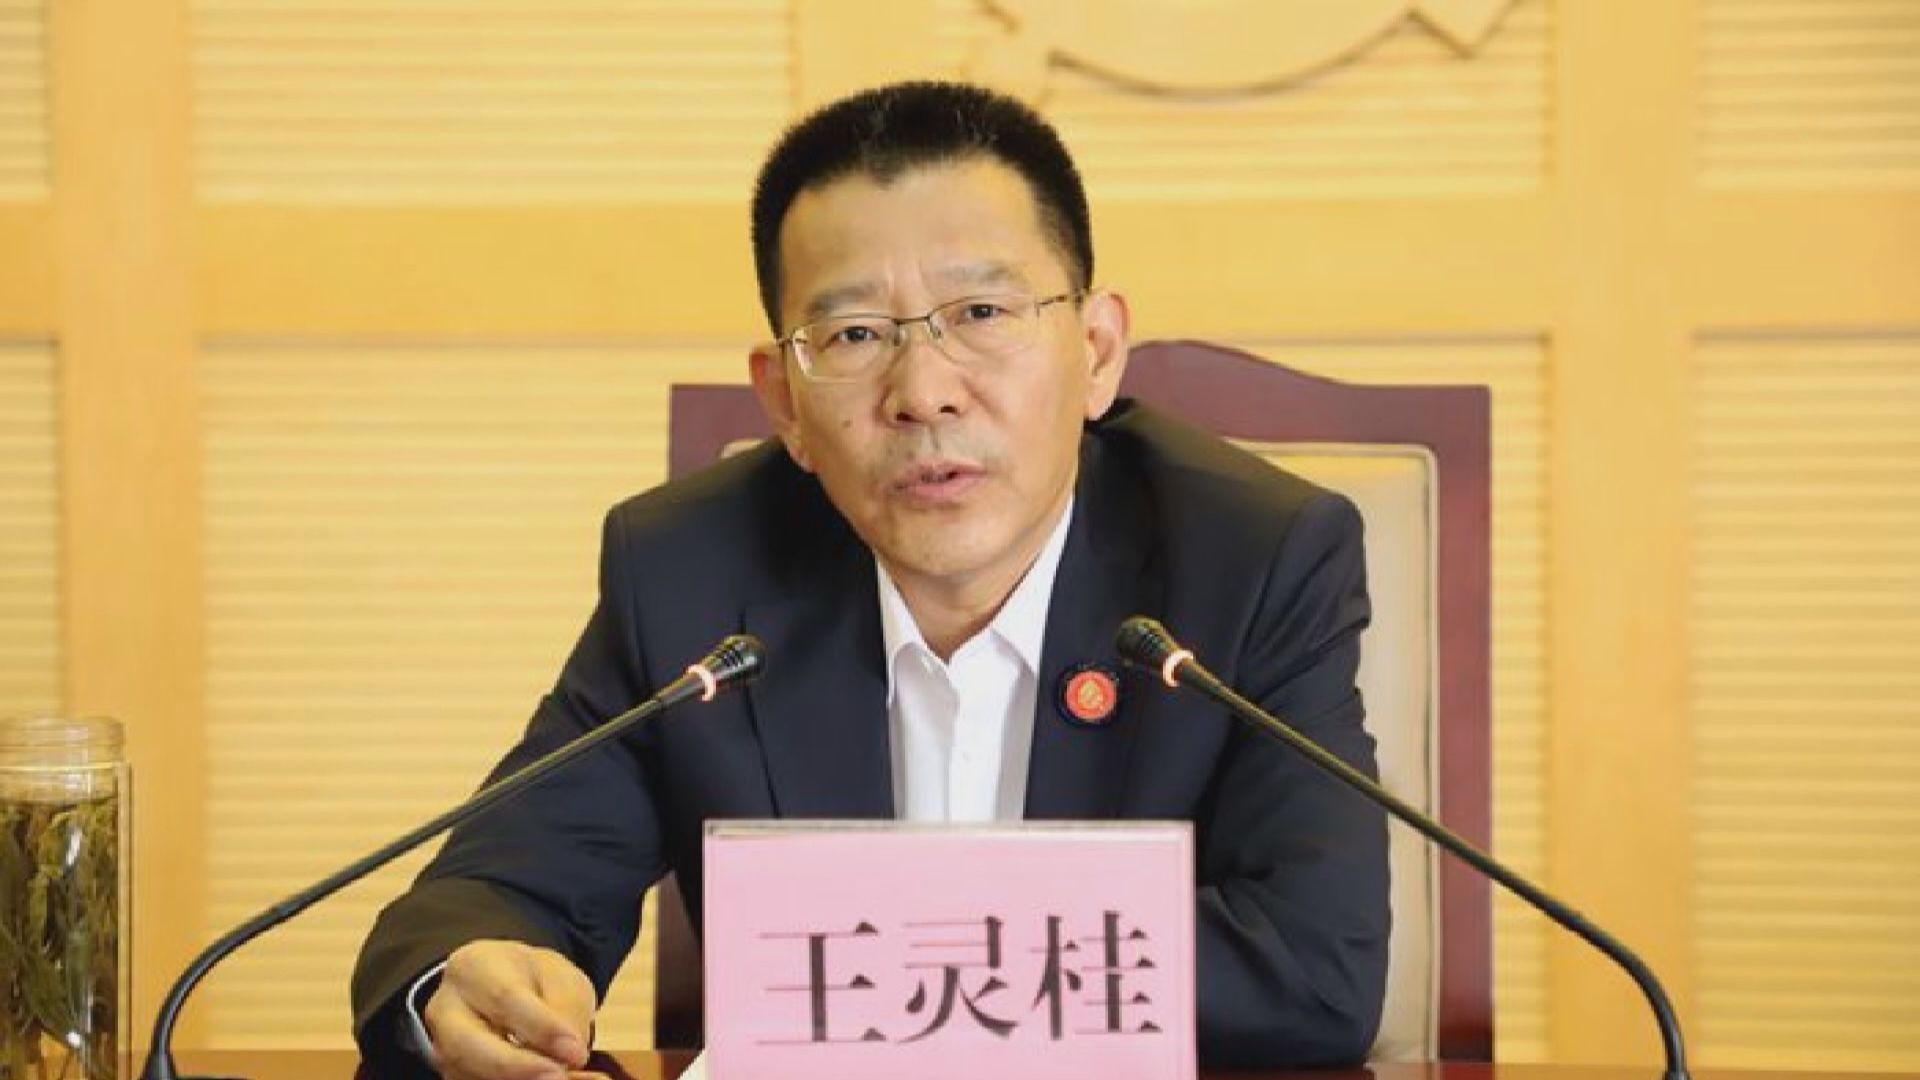 國務院任命王靈桂為港澳辦副主任  免去宋哲鄧中華職務